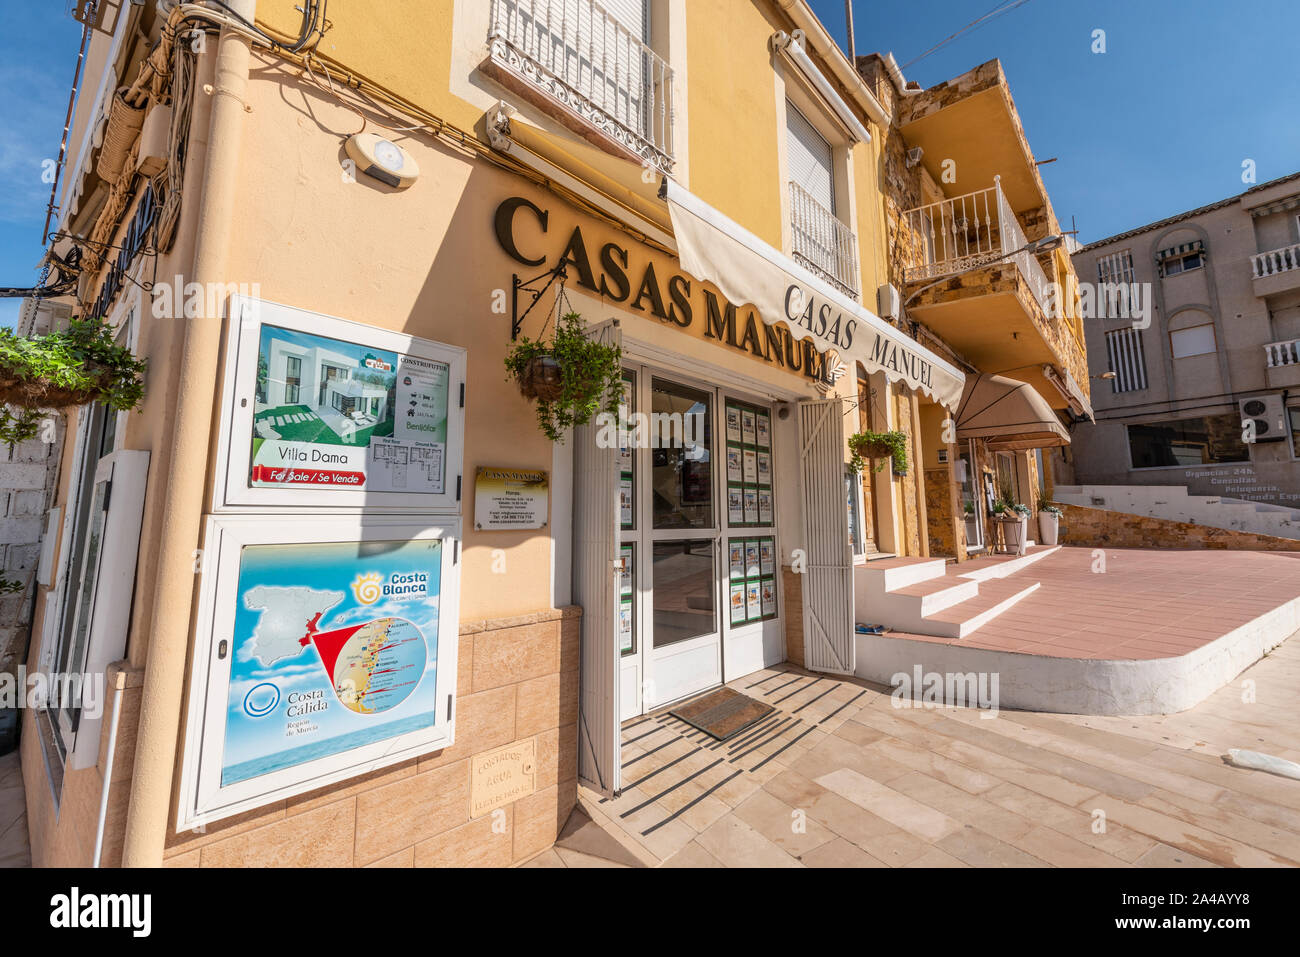 Casas Manuel Immobilienmakler Immobilienmarkt Geschäftsräume in Benijofar, Spanien, wie auf Sonne Meer & Verkauf Häuser TV-Show gesehen. Familienunternehmen Stockfoto